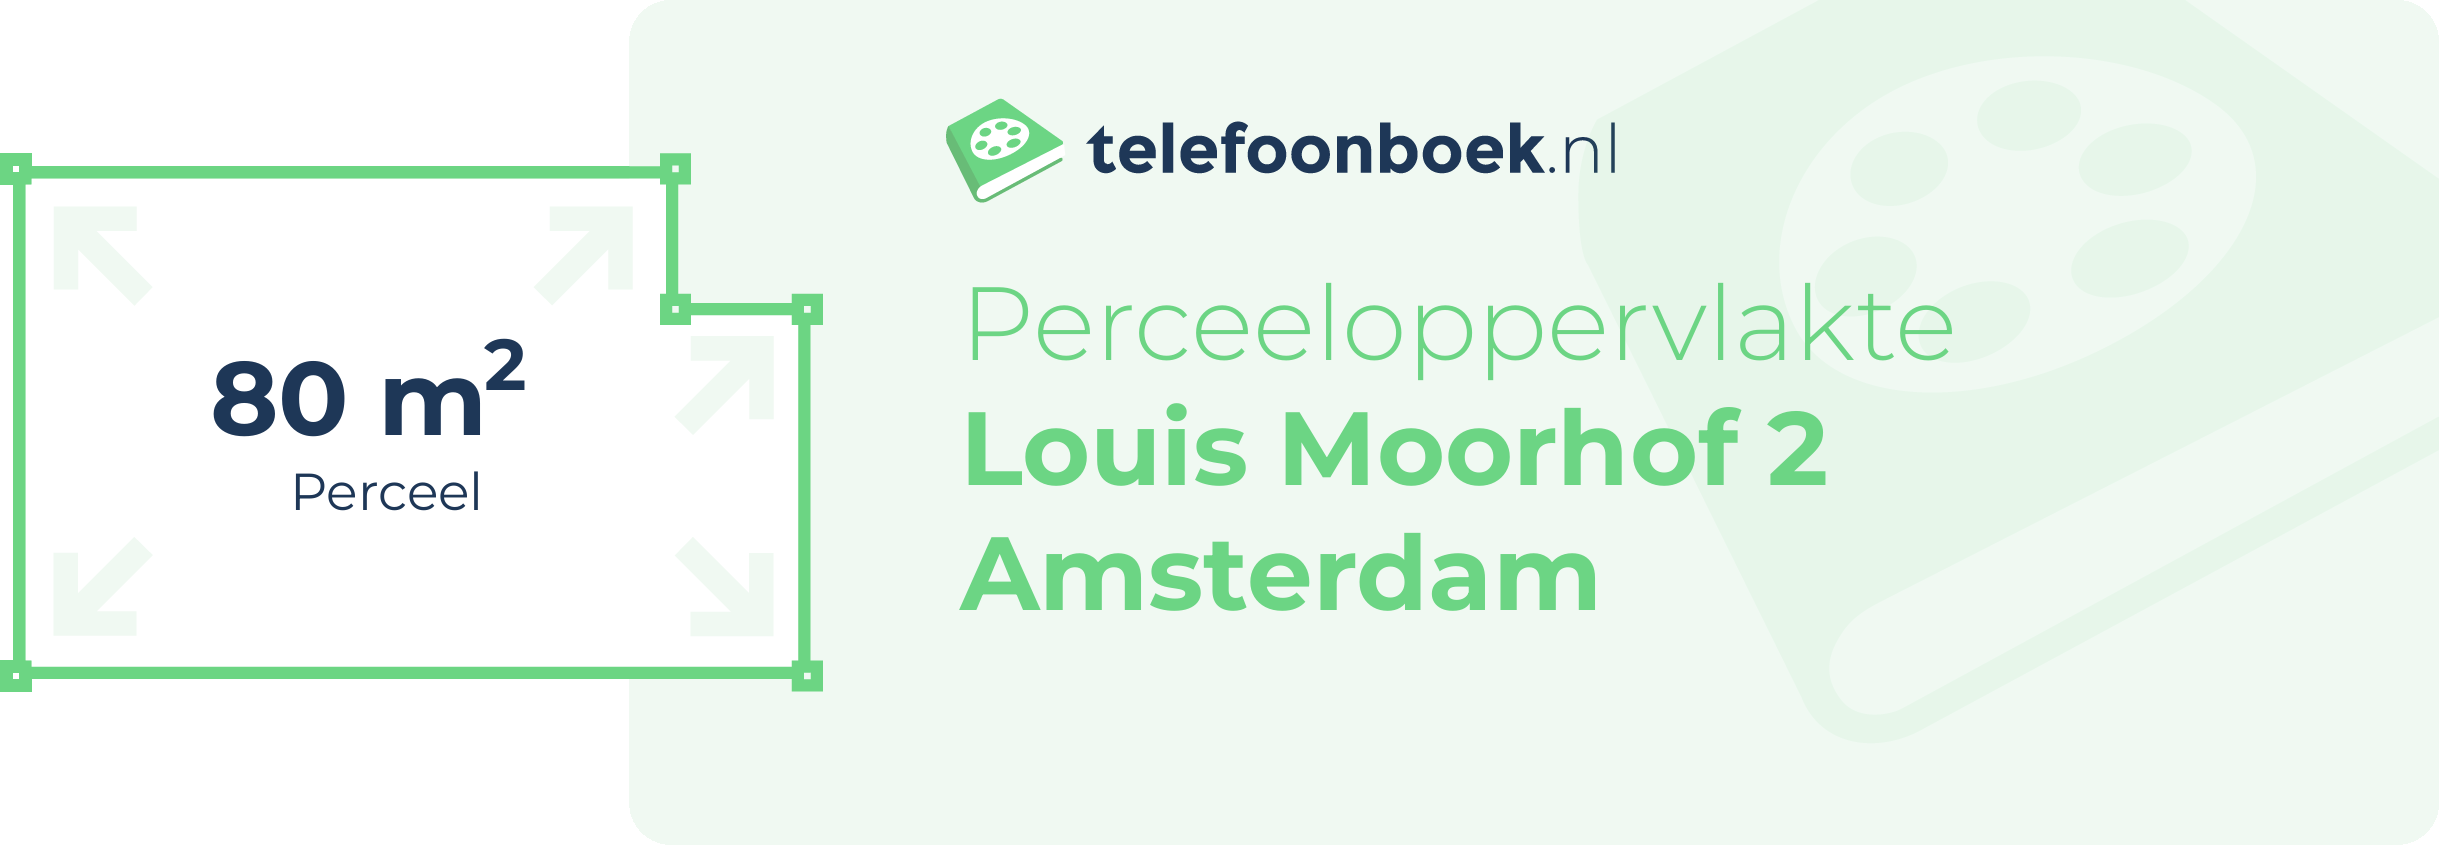 Perceeloppervlakte Louis Moorhof 2 Amsterdam